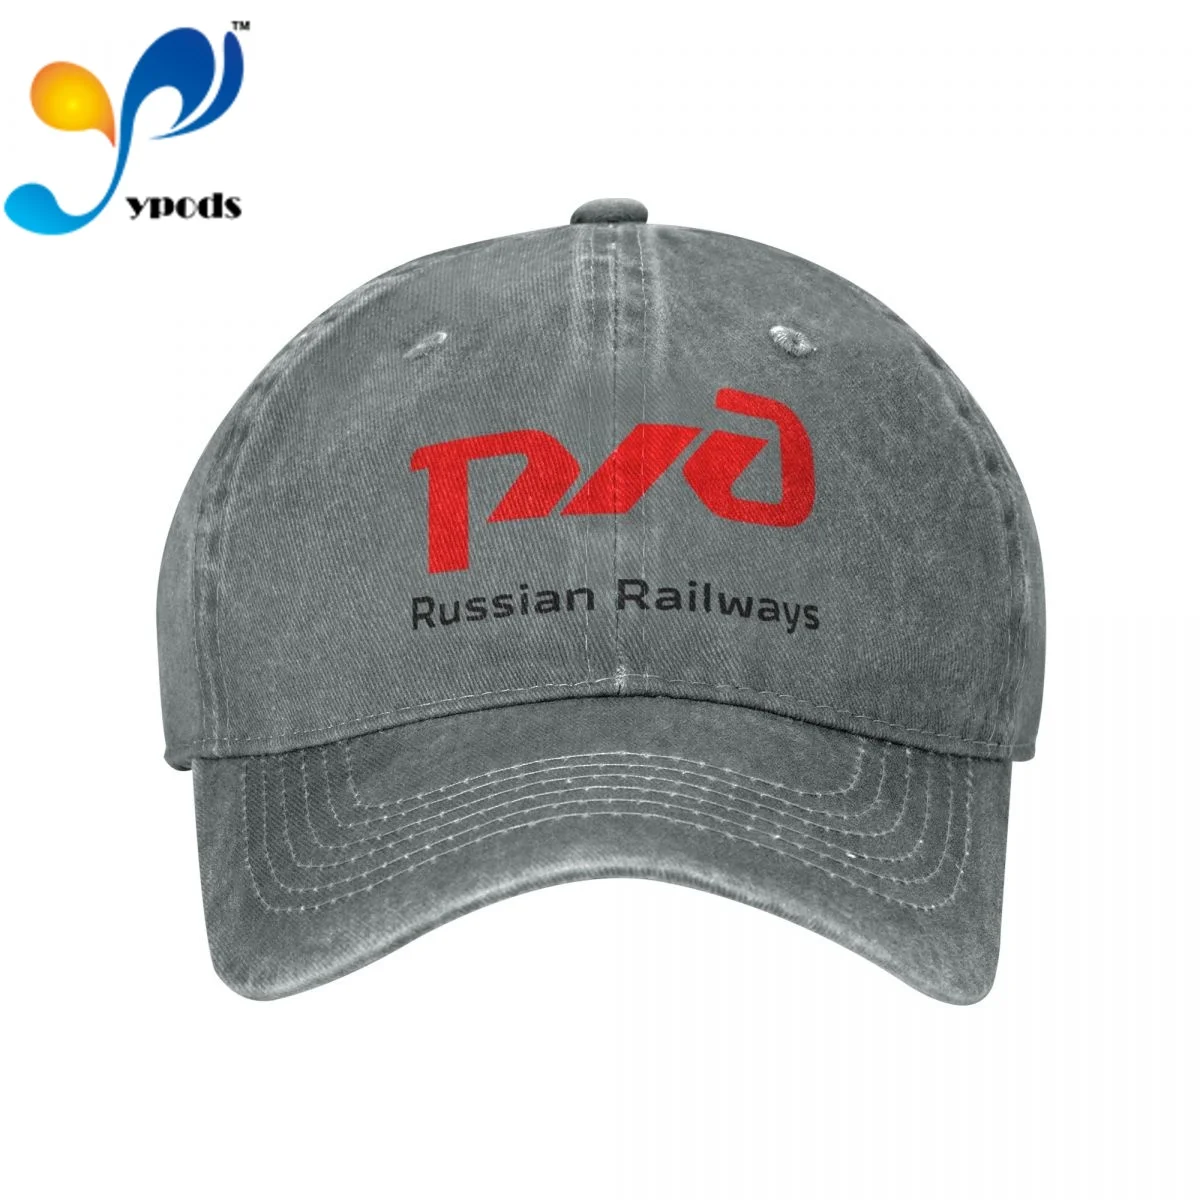 

Хлопковая бейсболка для мужчин и женщин, русская железная дорога, кепки, бейсболка